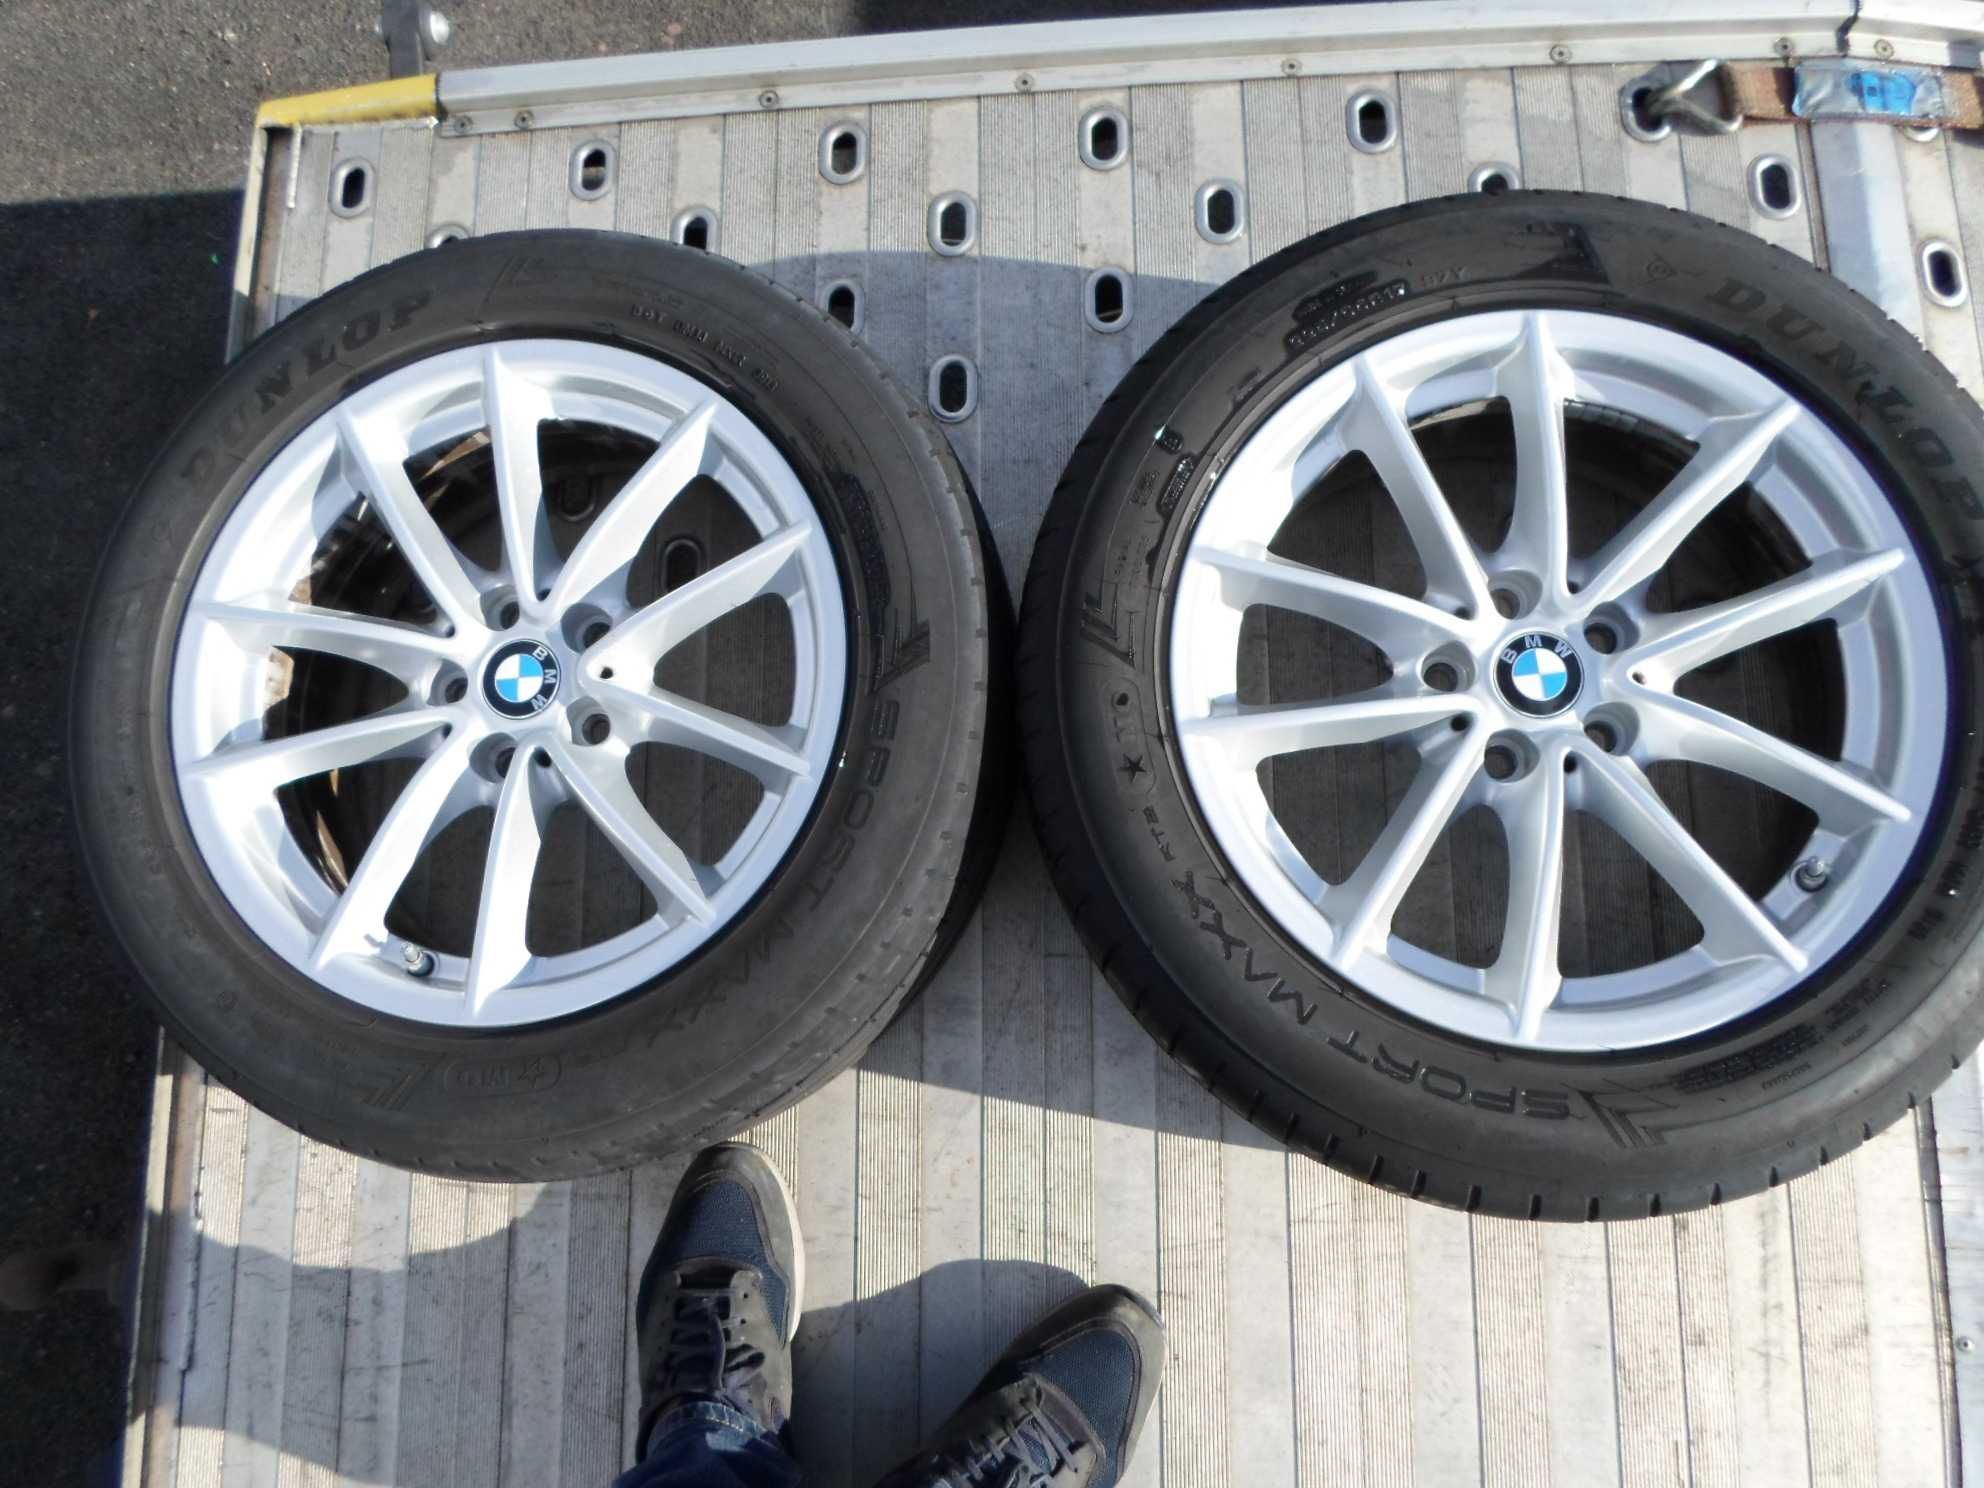 BMW X3, 7,5"x17" , 5x120 ET32 - felgi aluminiowe